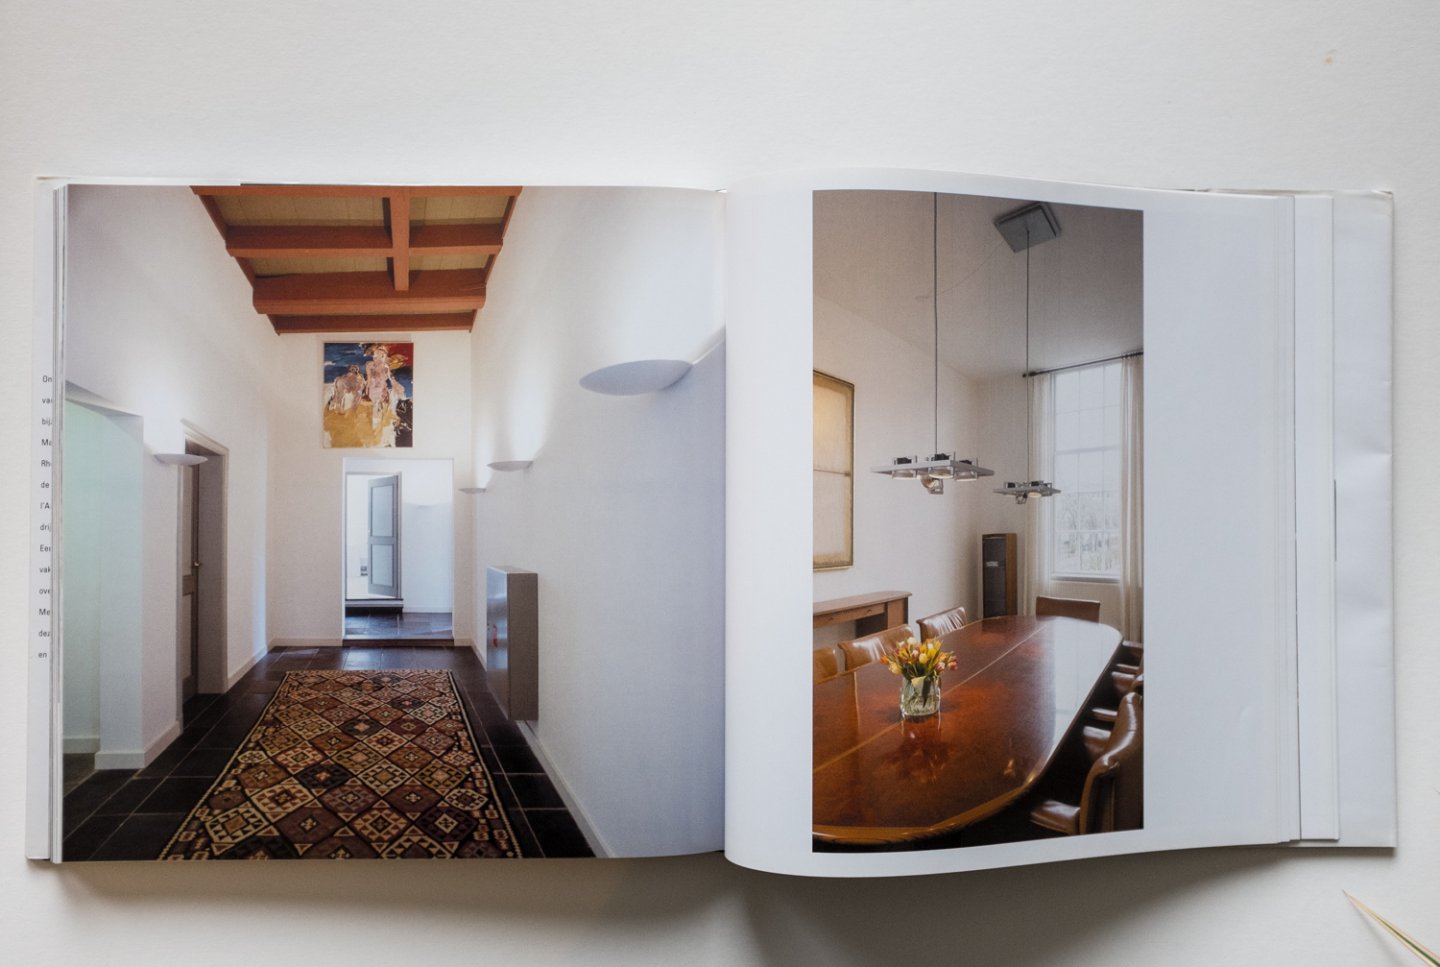 Dijk, Emile van - fotografie: Cees Roelofs - Tekst: Rob Bonnemaijers - Ontmoetingen  - Emile van Dijk interior designer